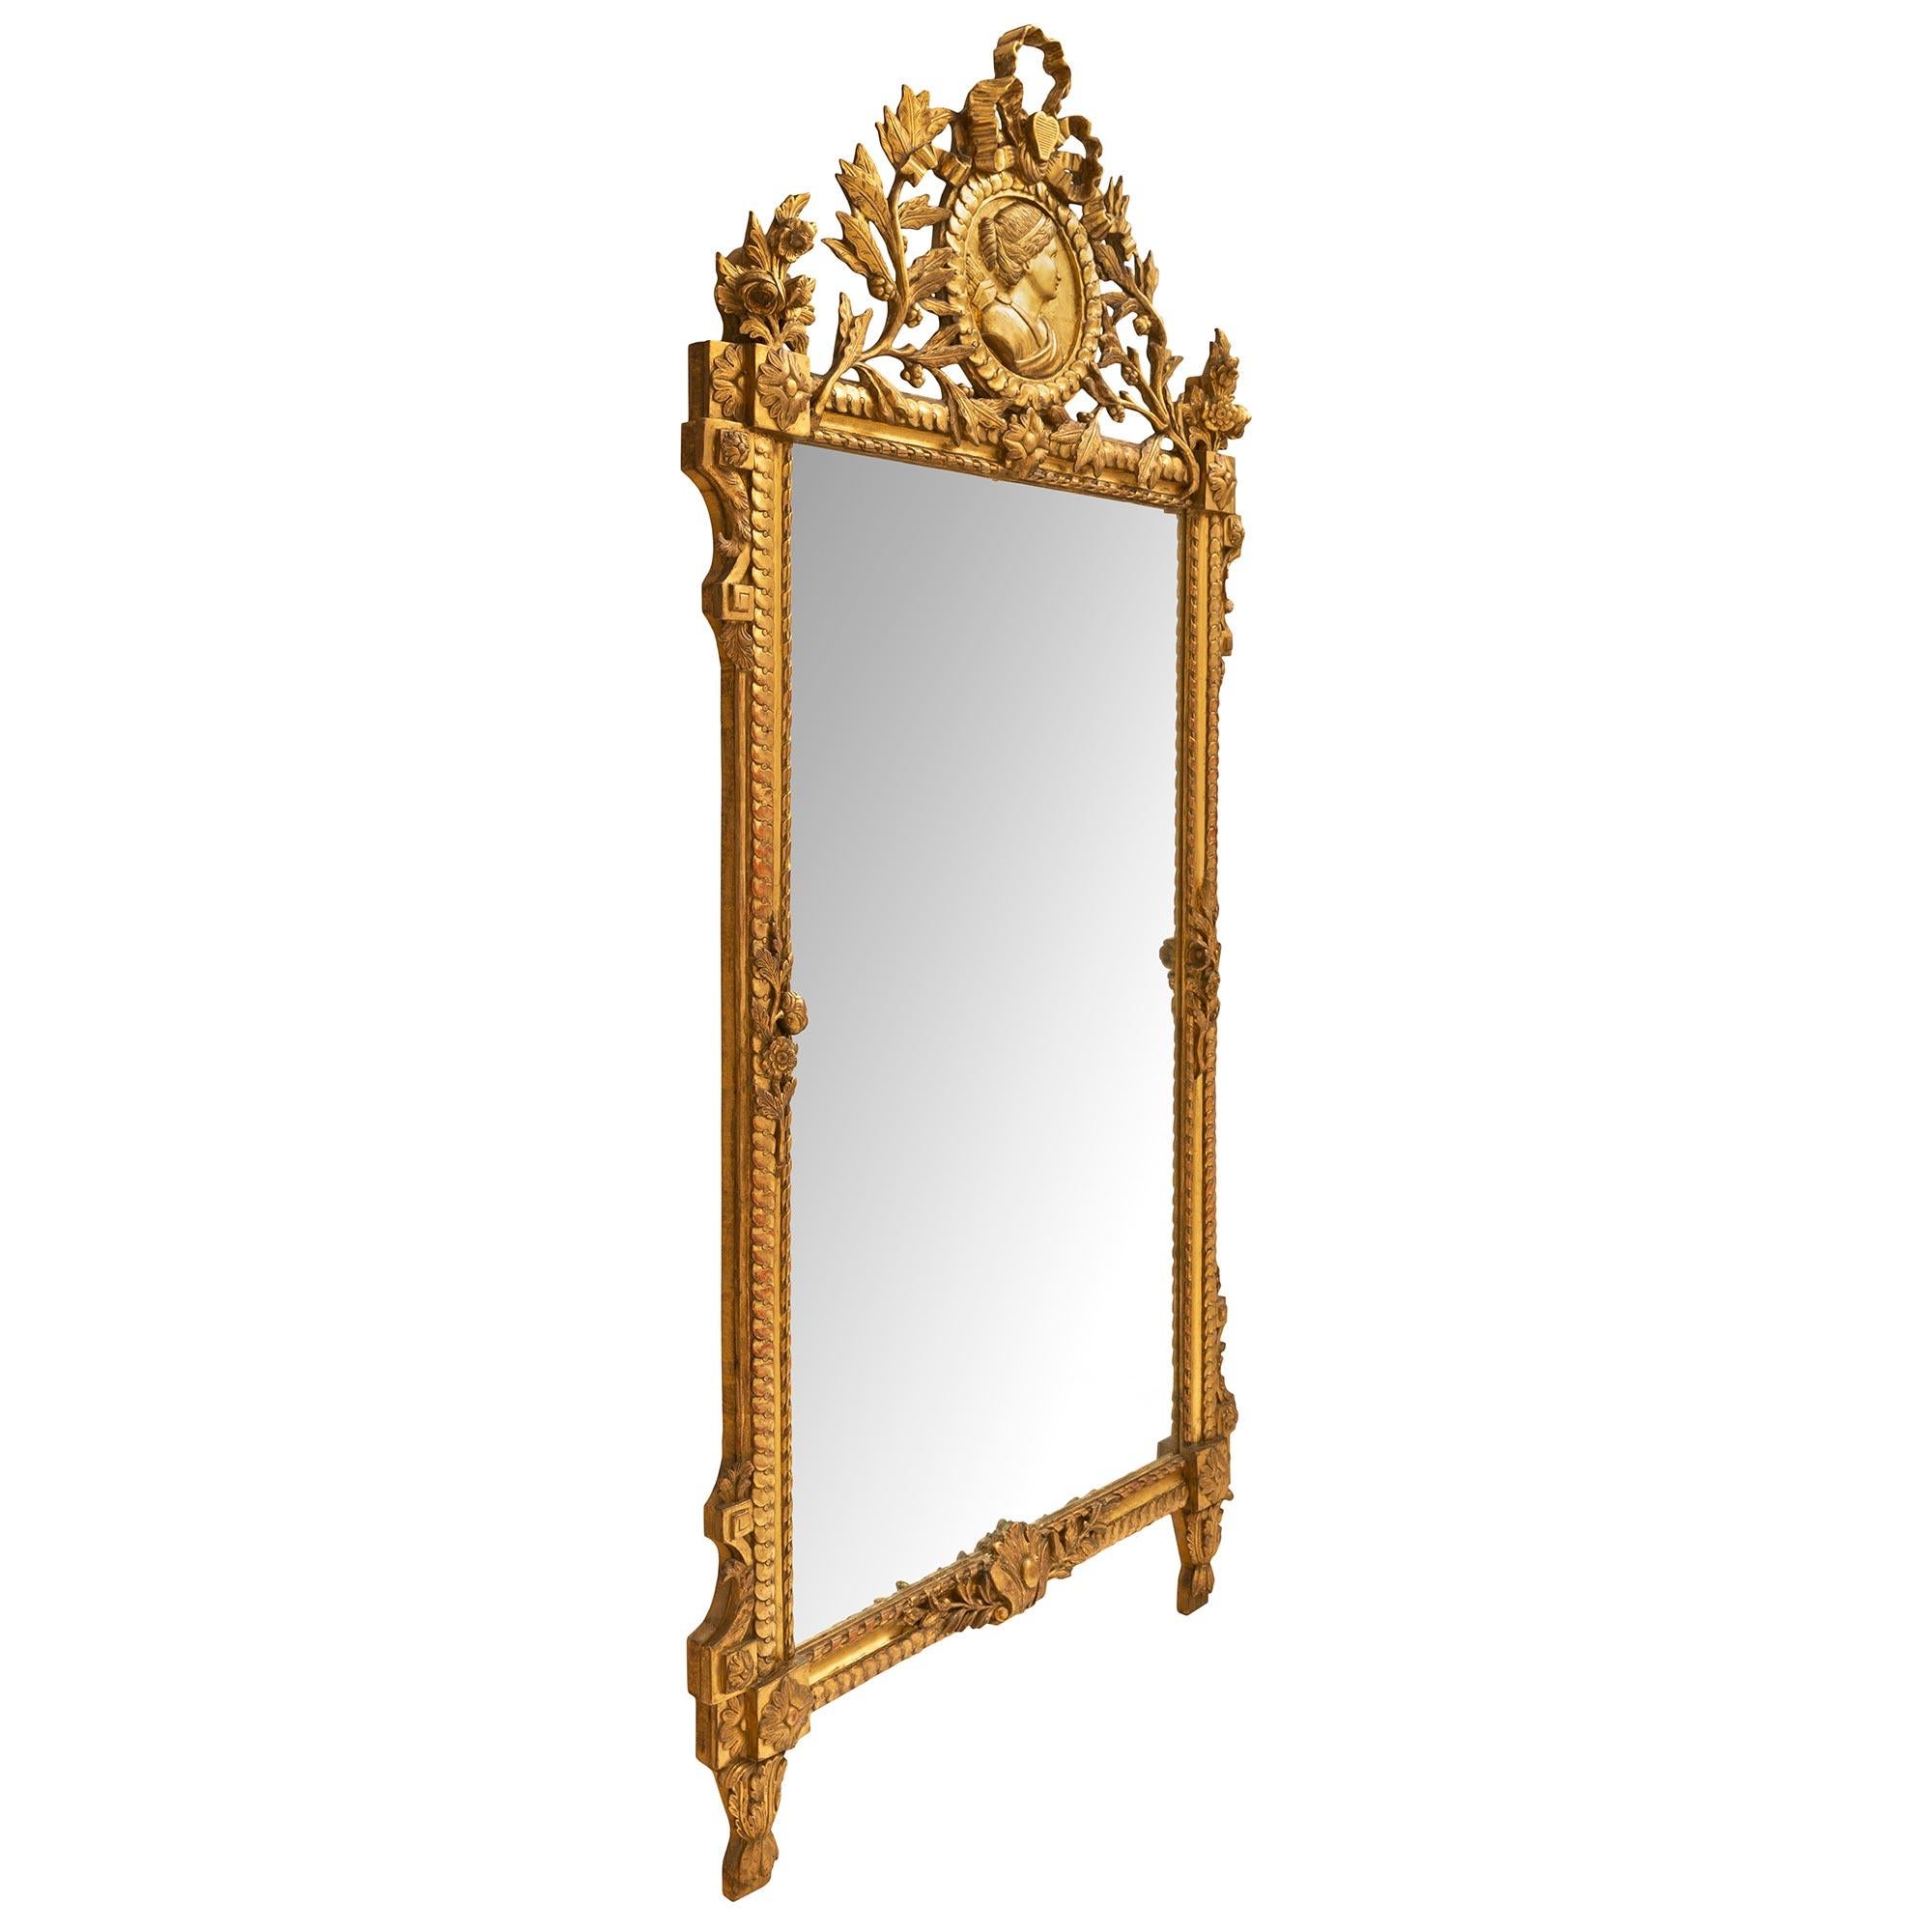 Un sensationnel et grande échelle française du 19ème siècle Louis XVI st. miroir en bois doré avec toutes les dorures d'origine et richement sculpté tout au long. Le cadre à motif de ruban entrelacé et de corde torsadée présente de grandes feuilles